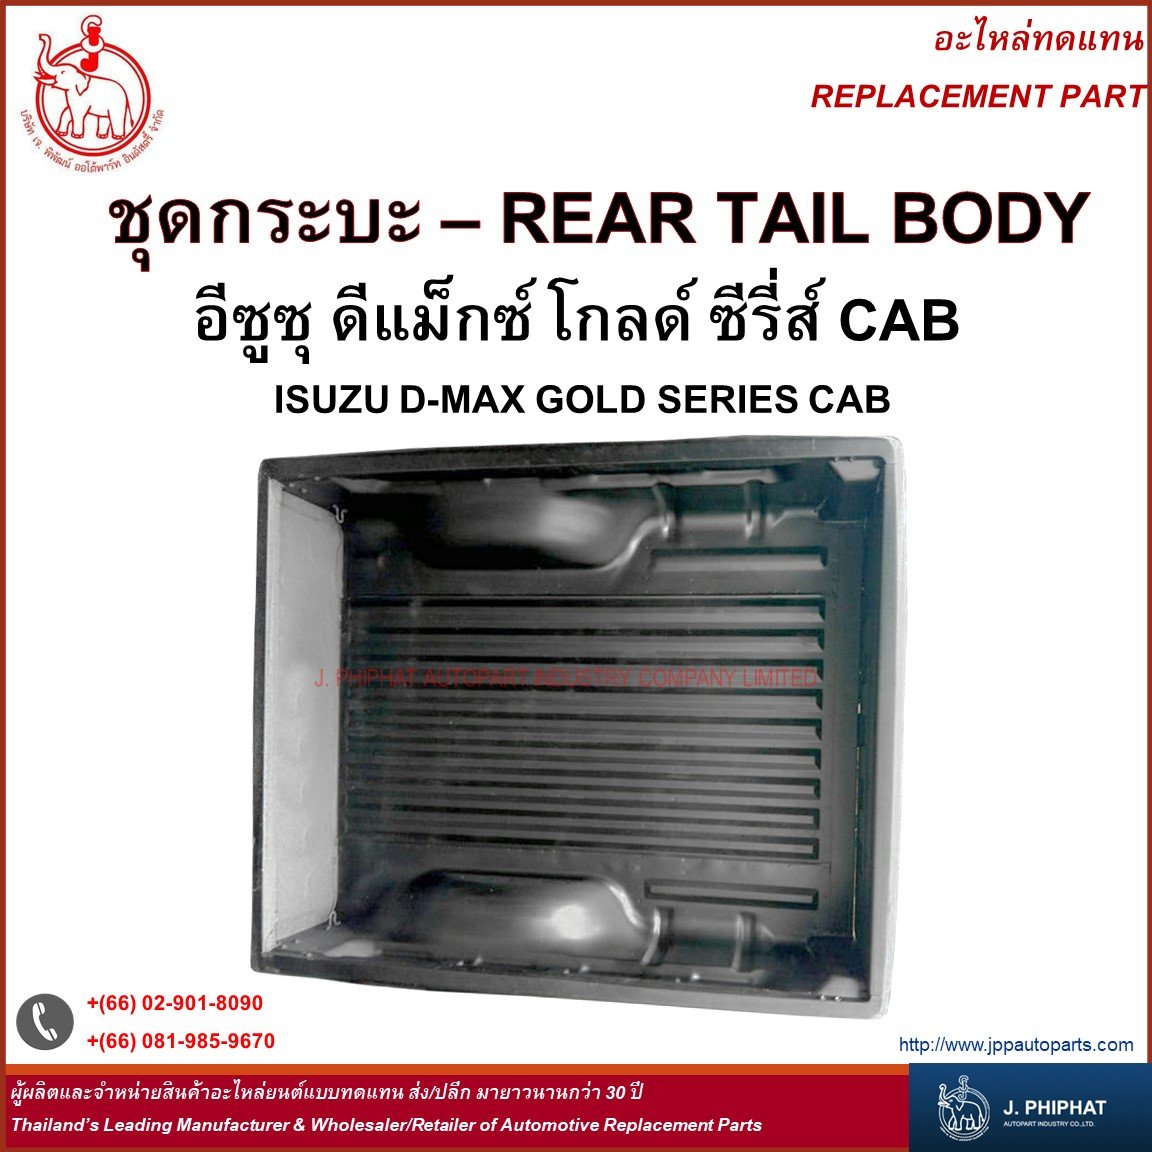 Rear Tail Body - Isuzu D-Max Gold Series CAB